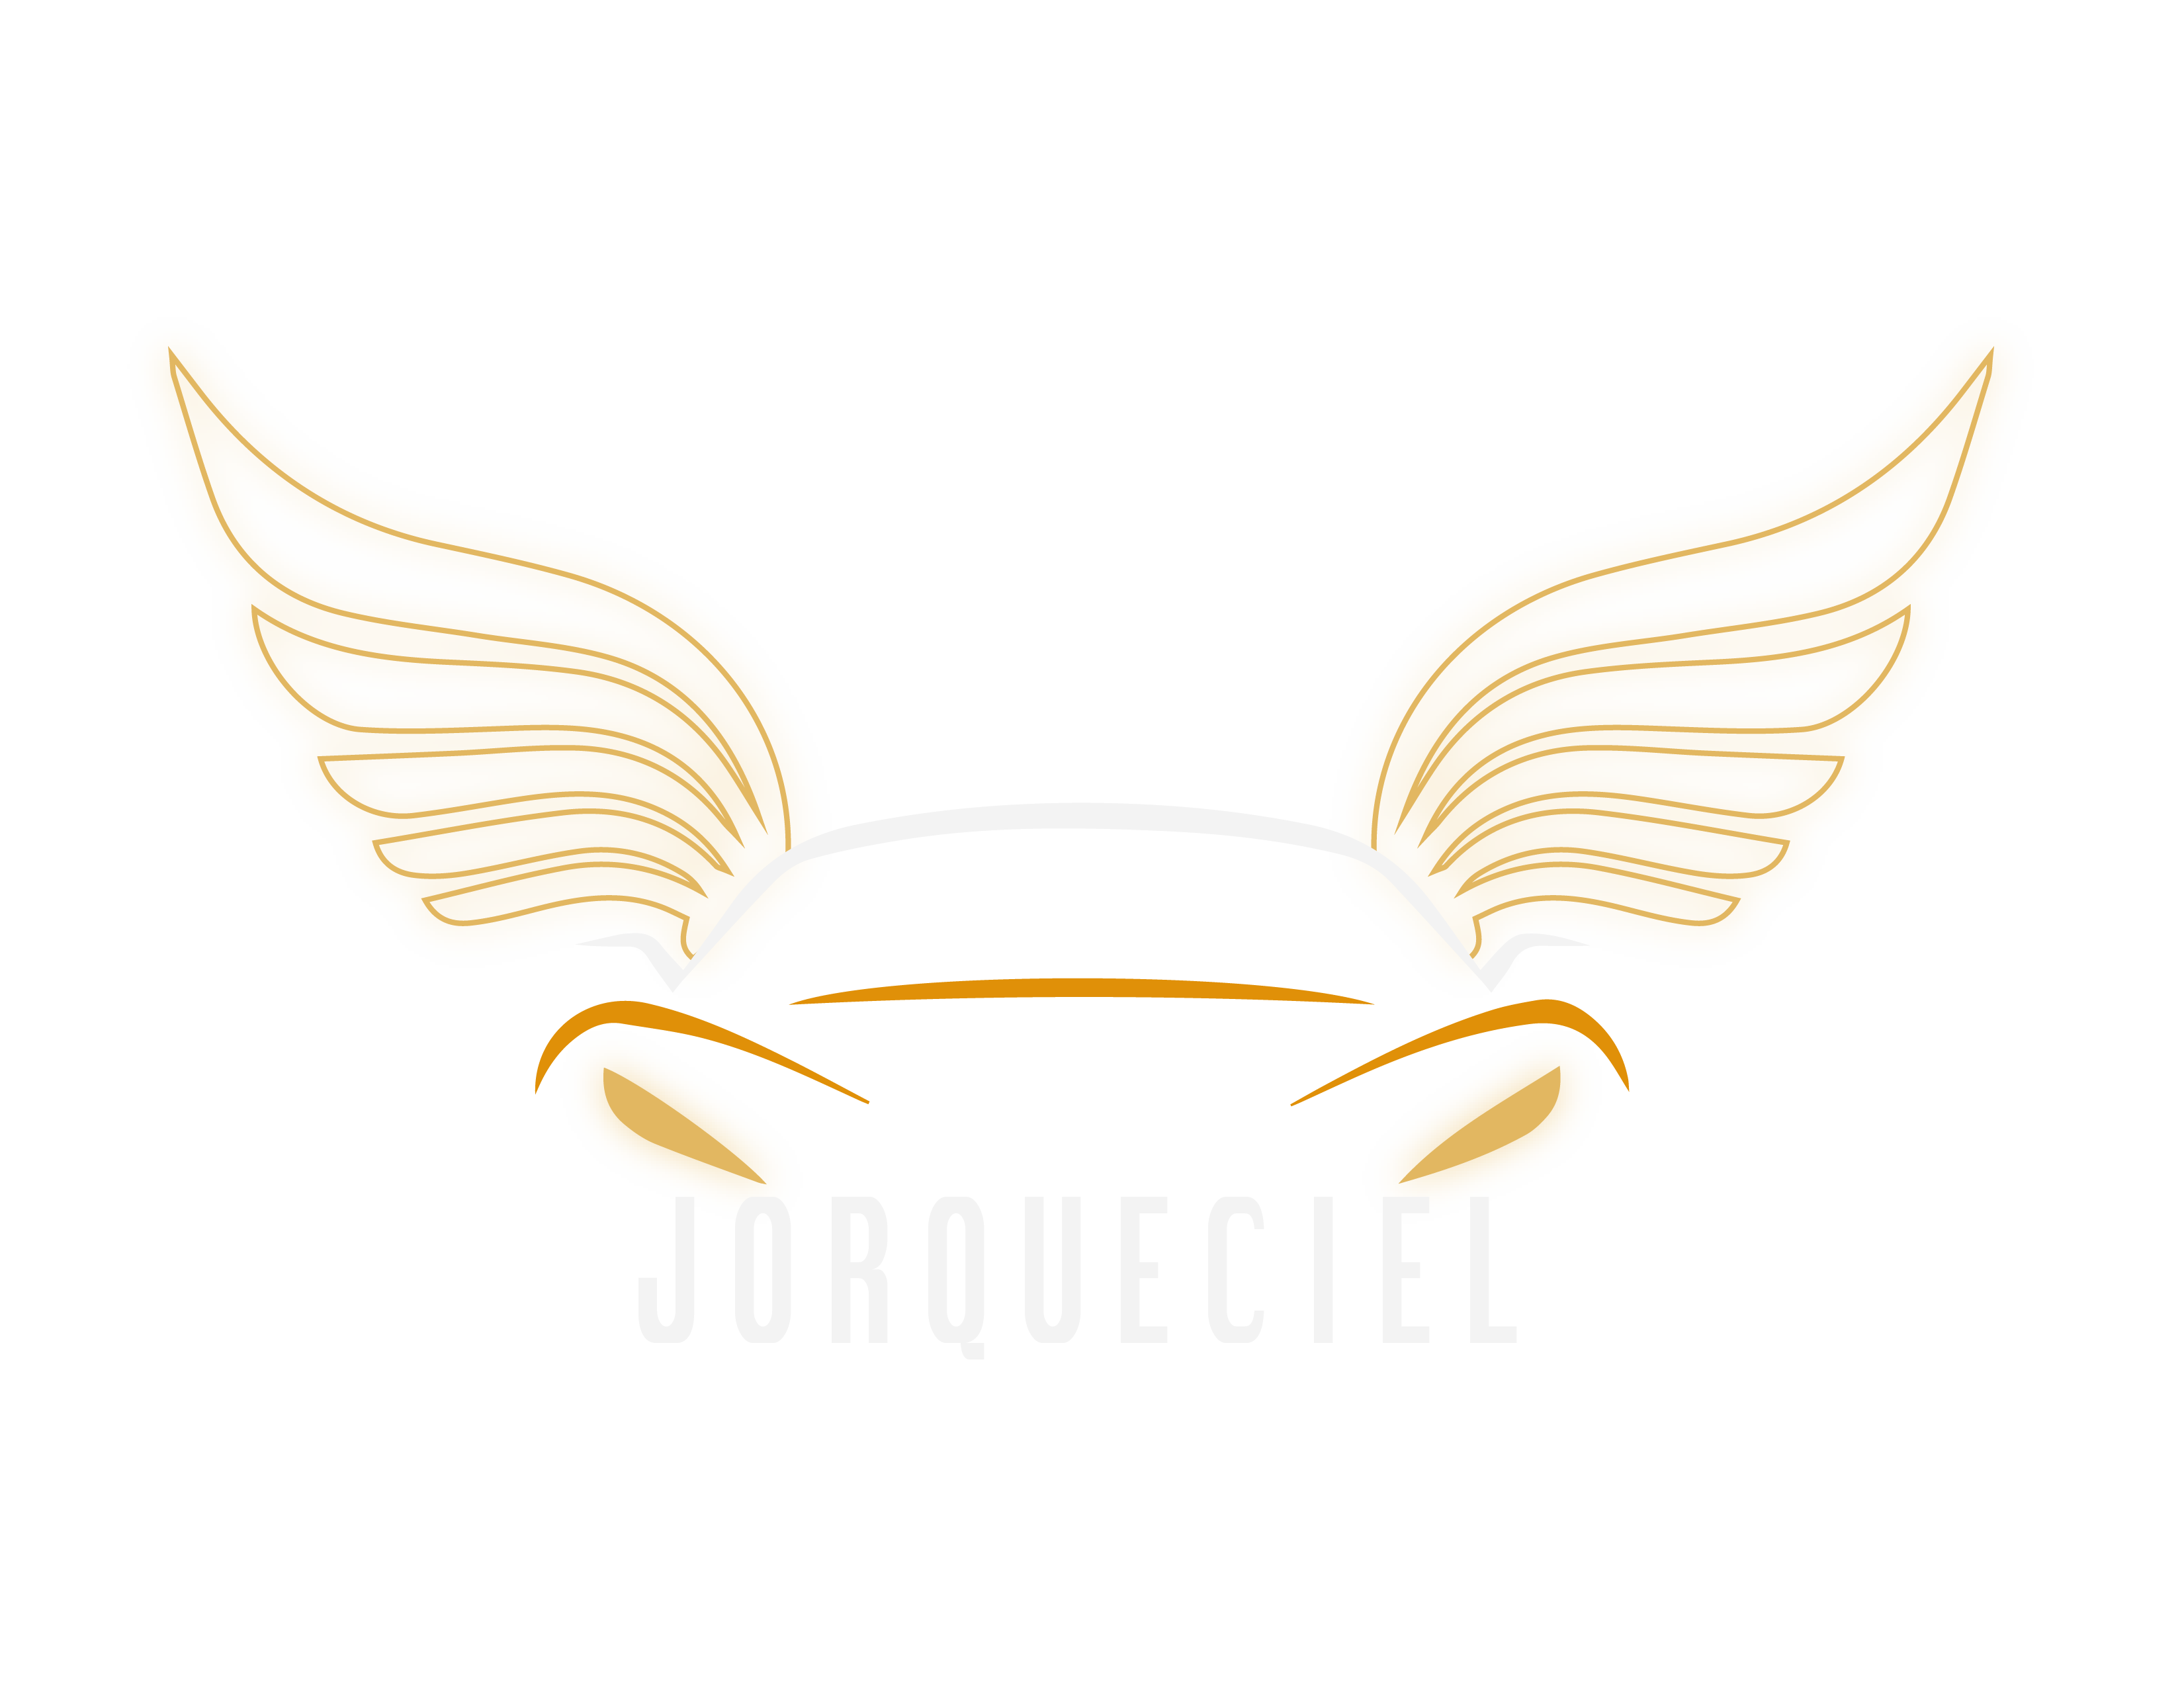 Logo-Jorqueciel Ltd.png